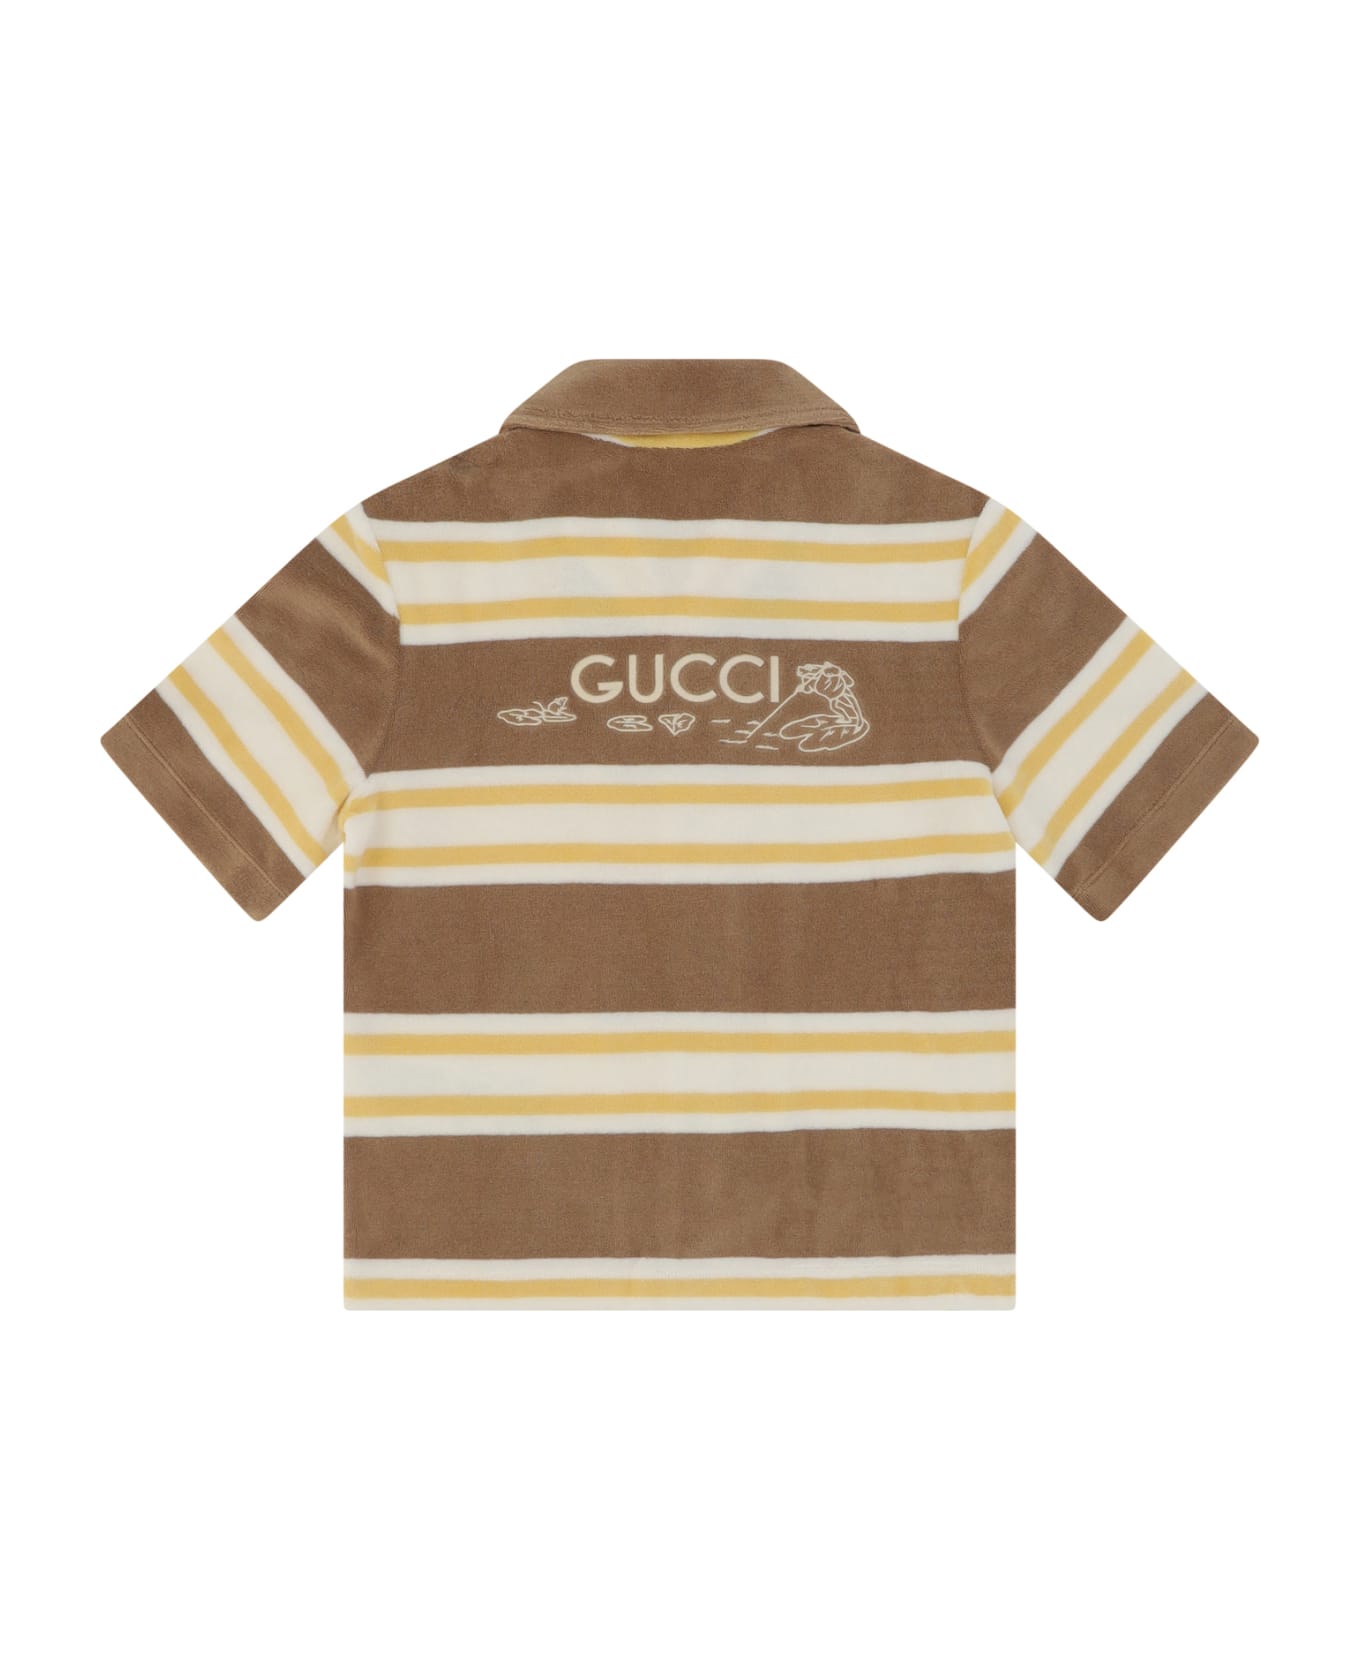 Gucci Shirt For Boy - Giallo